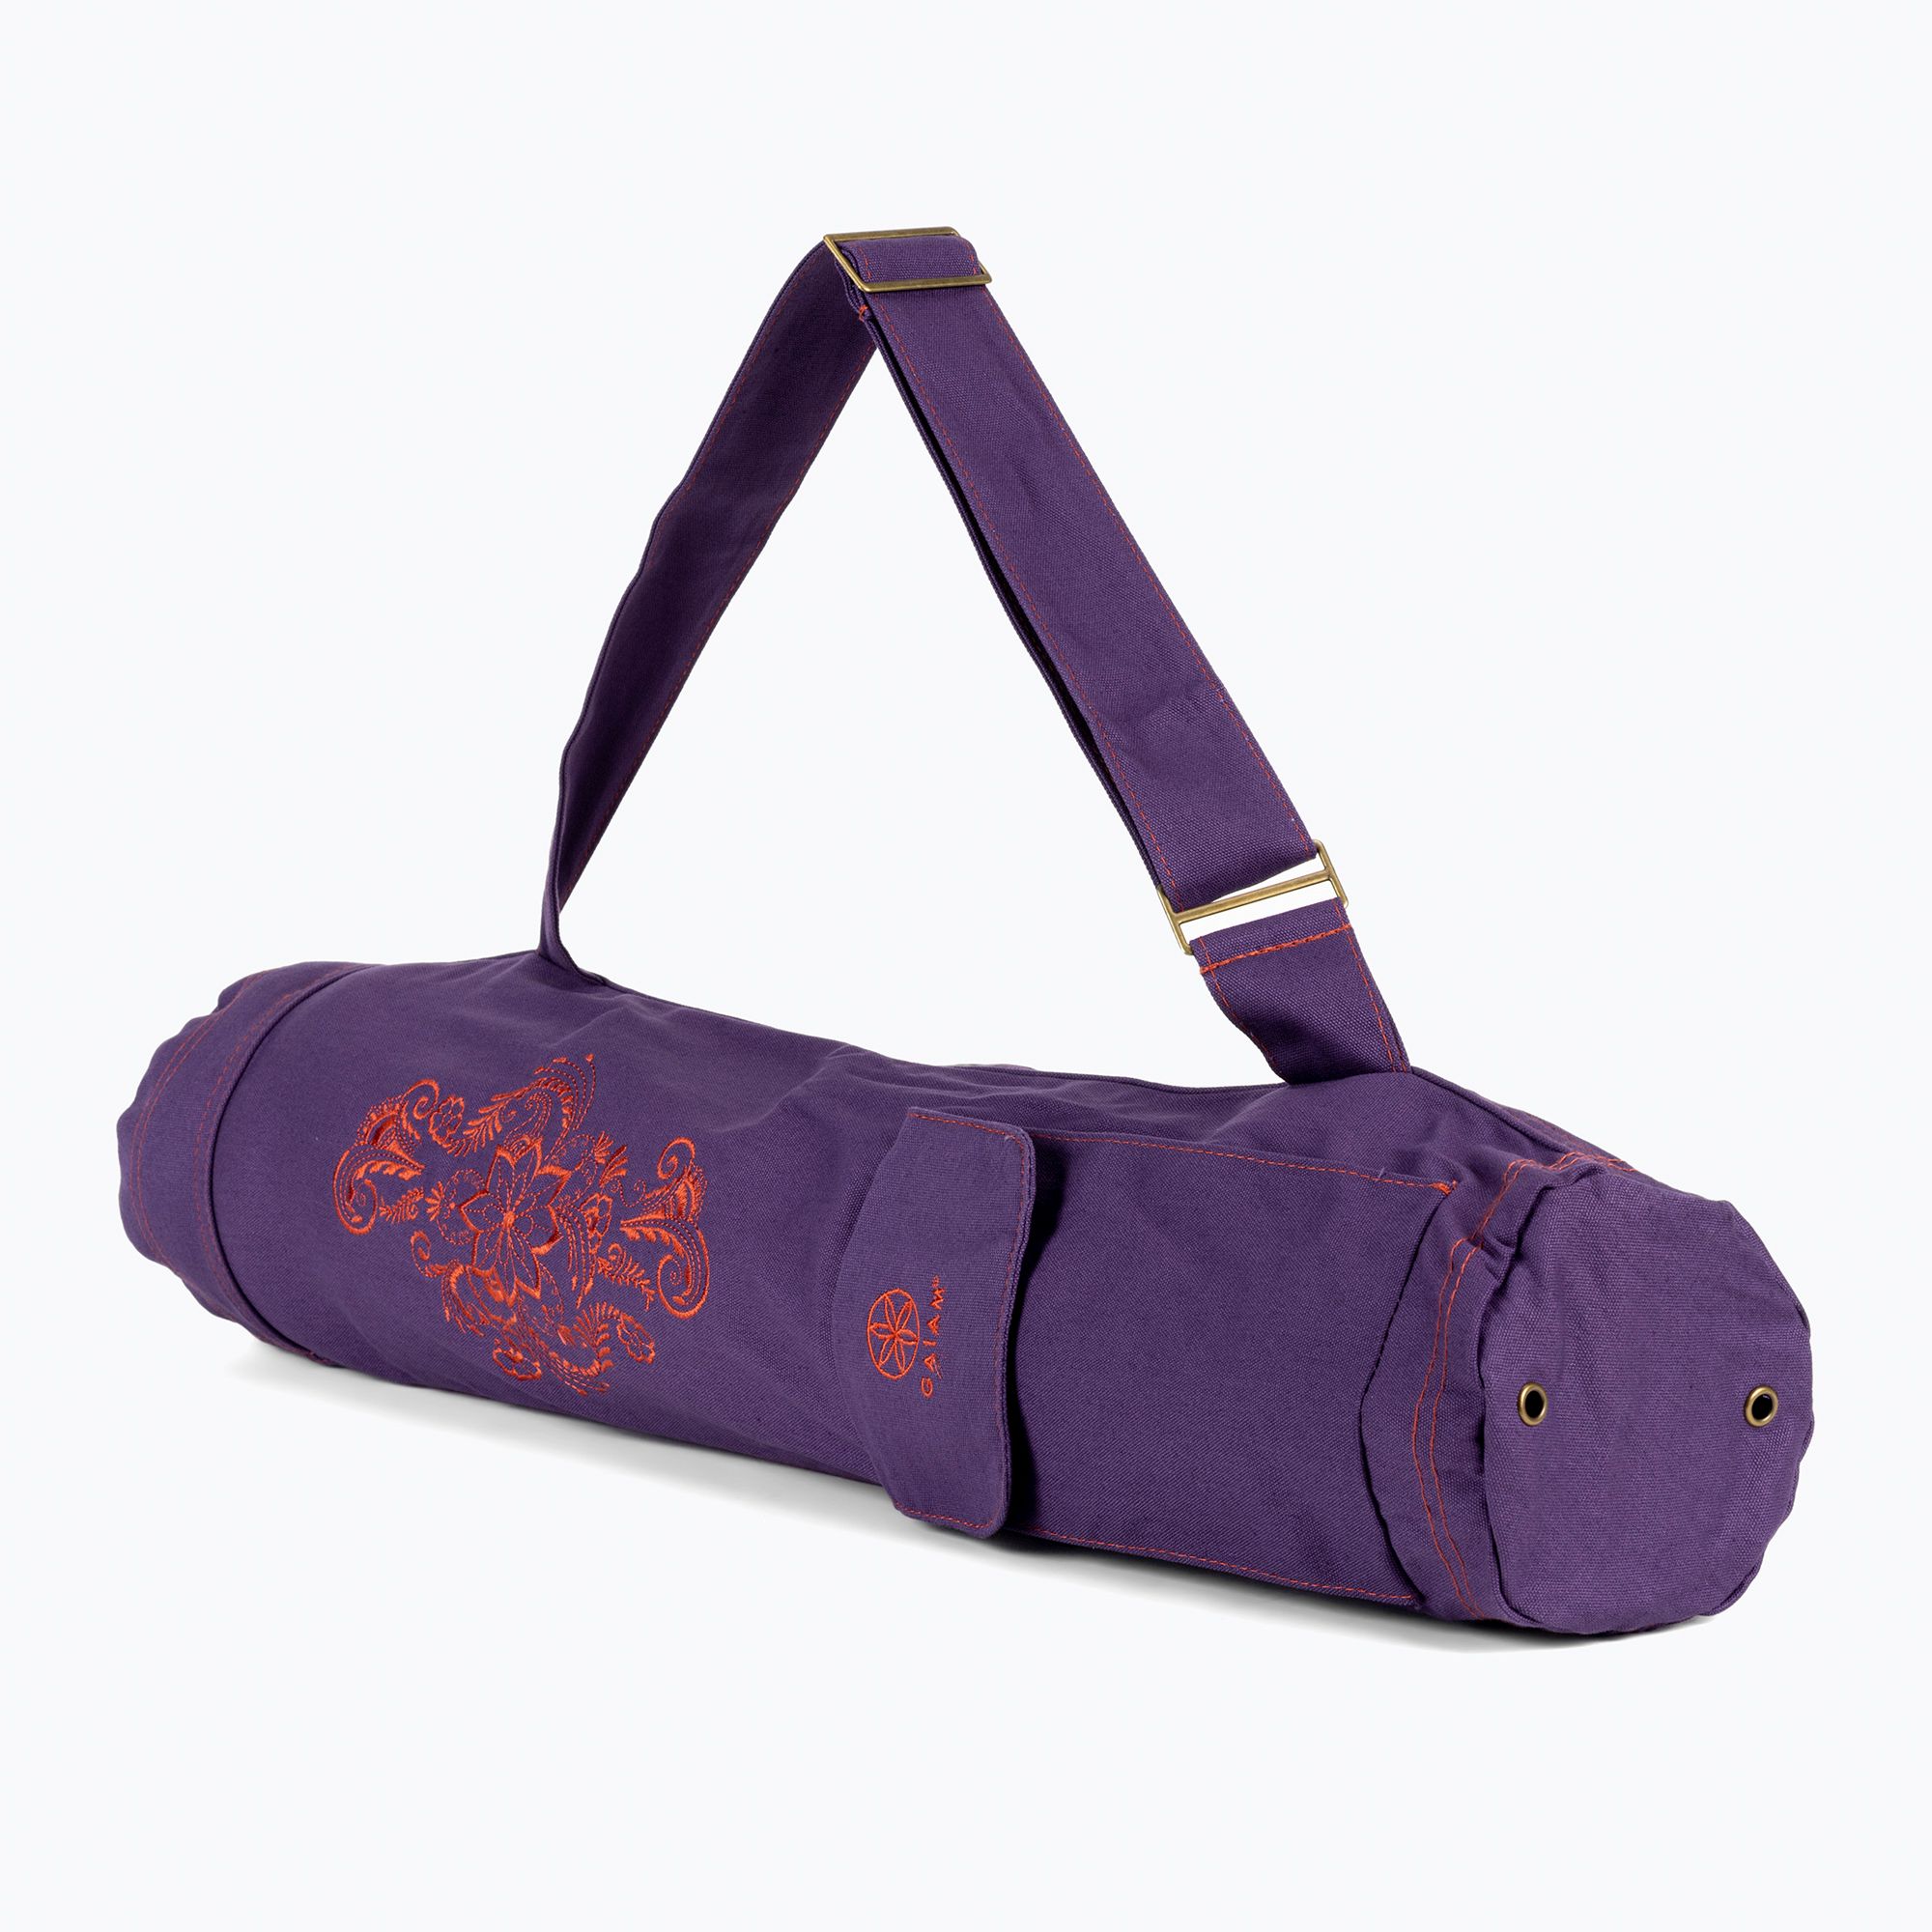 https://sportano.com/img/986c30c27a3d26a3ee16c136f92f4ff5/0/1/018713629142_20-jpg/gaiam-yoga-mat-bag-purple-62914-0.jpg